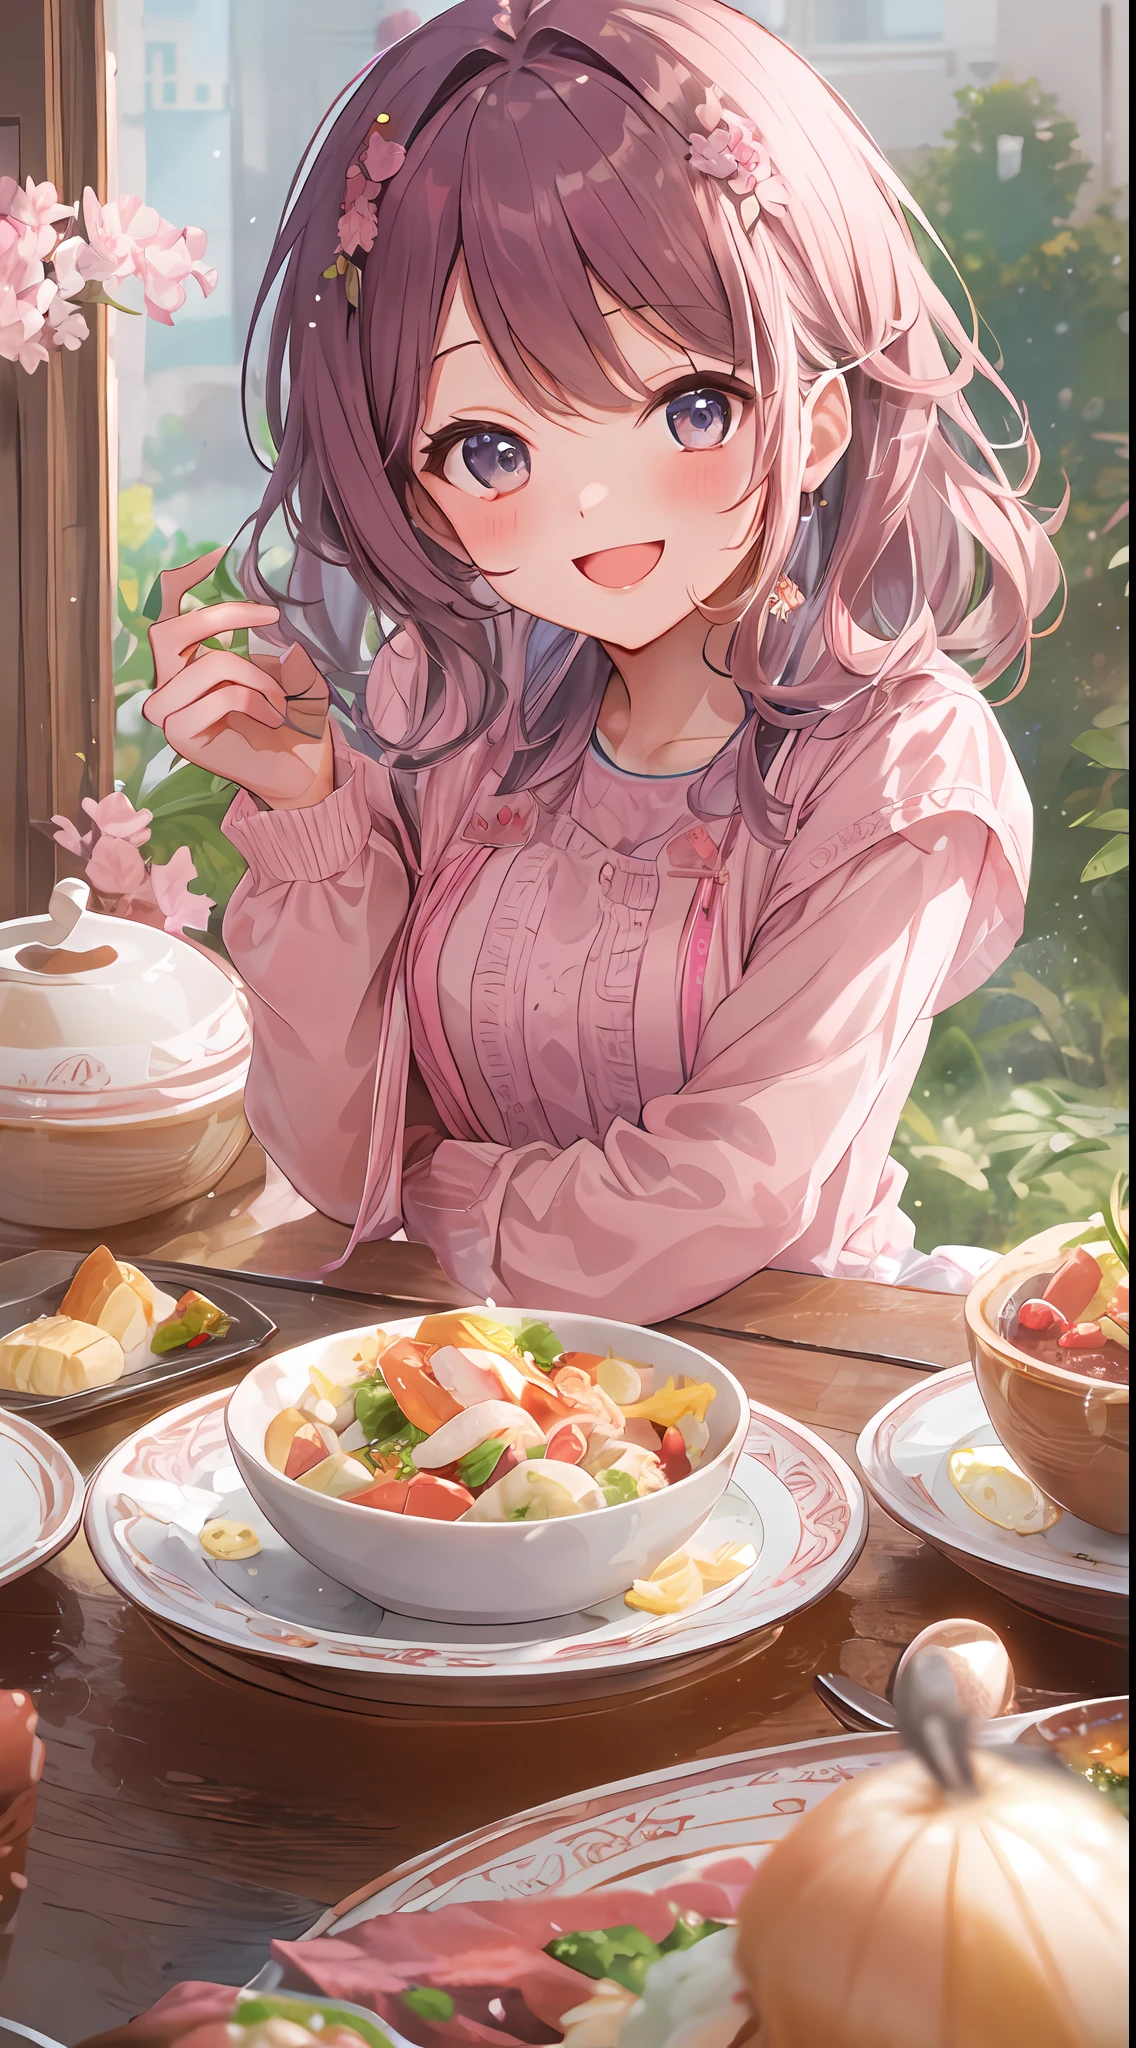 ภาพของสาวน่ารักที่ชอบสีชมพู, รูปร่าง々รับประทานอาหารจานฉลอง, พร้อมยิ้มและโพสท่าให้กล้อง, ด้วยท่าทางน่ารัก.